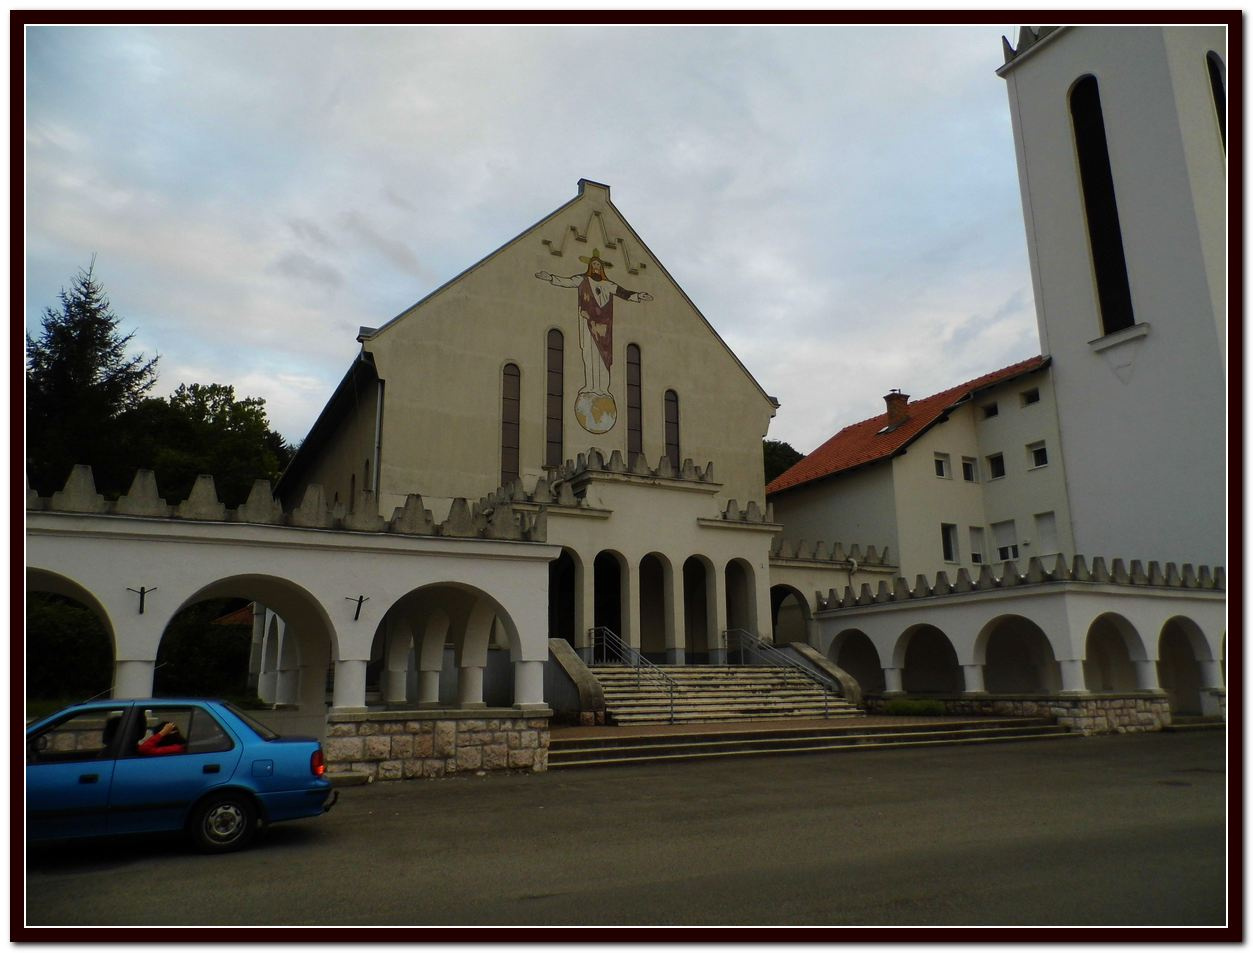 036 Szent Borbála templom - Komló